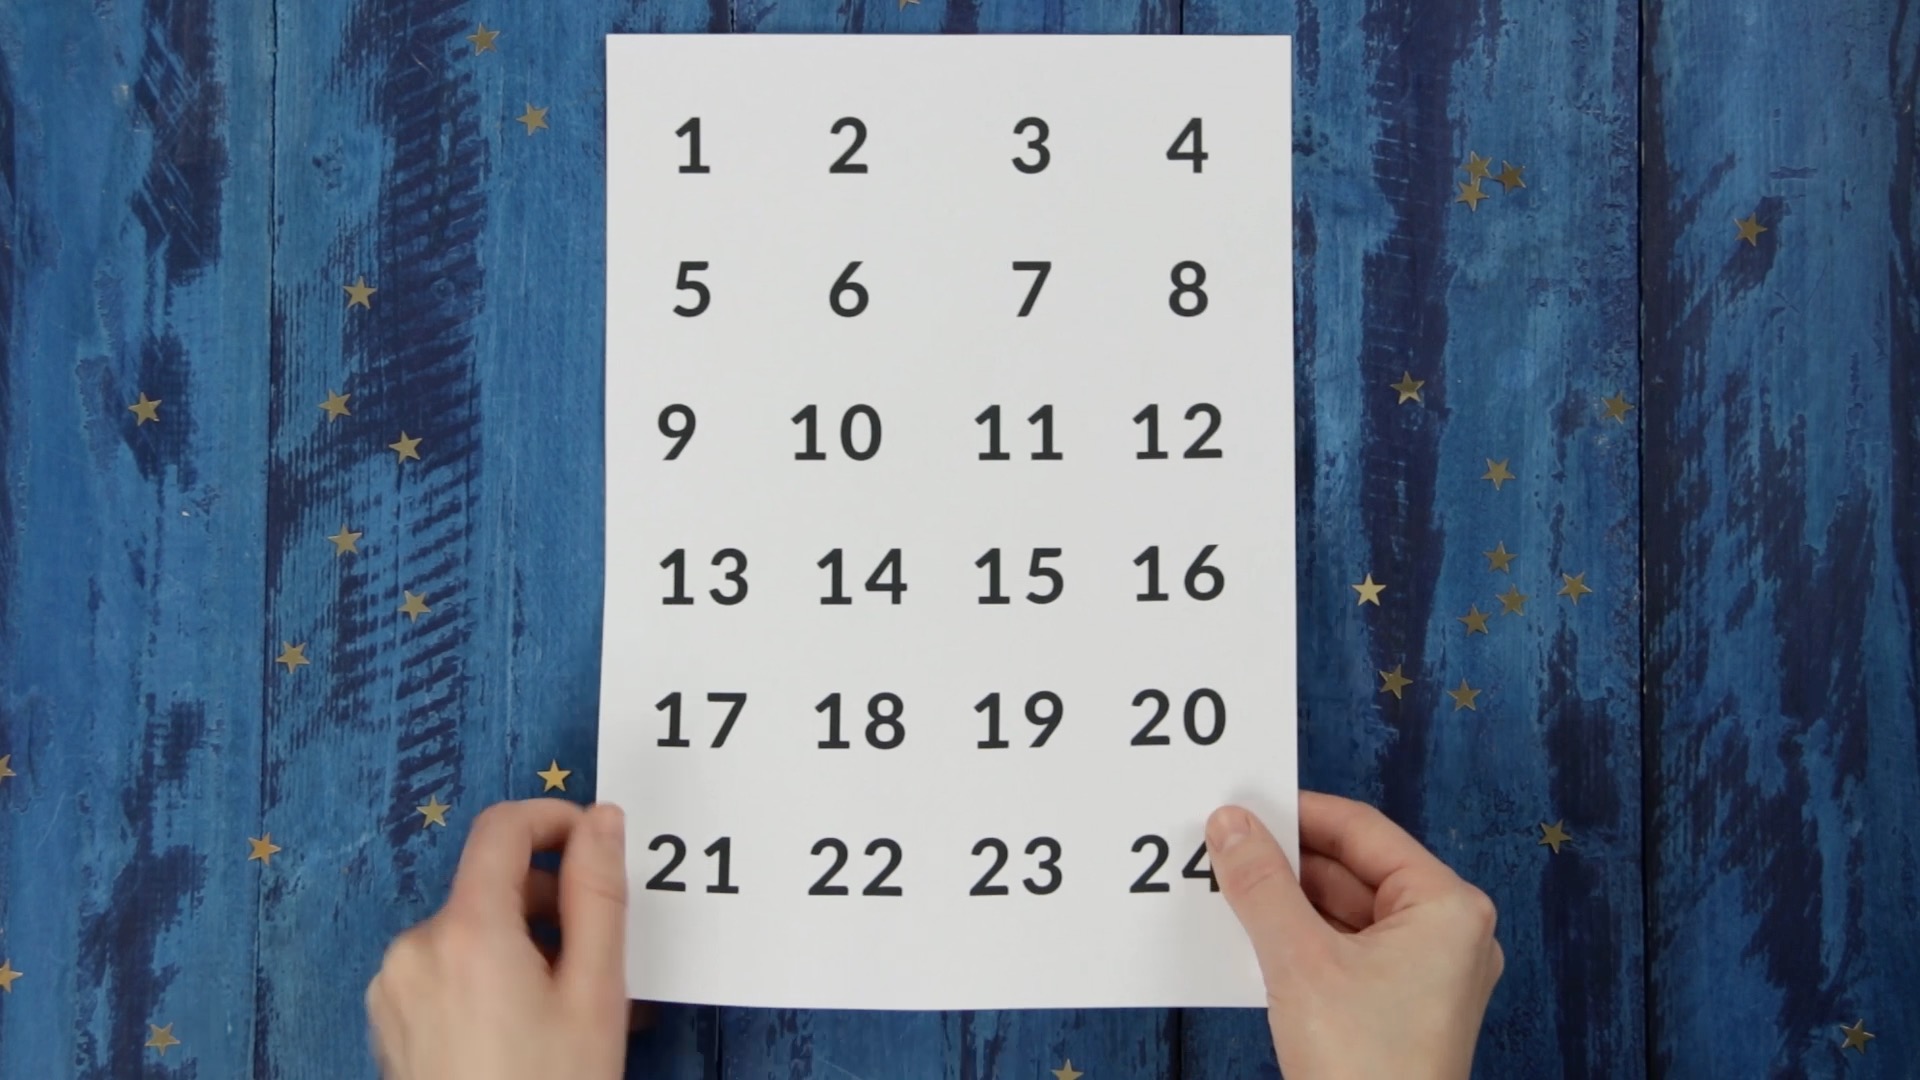 Drucke die Zahlen von 1 bis 24 auf ein weißes Blatt.